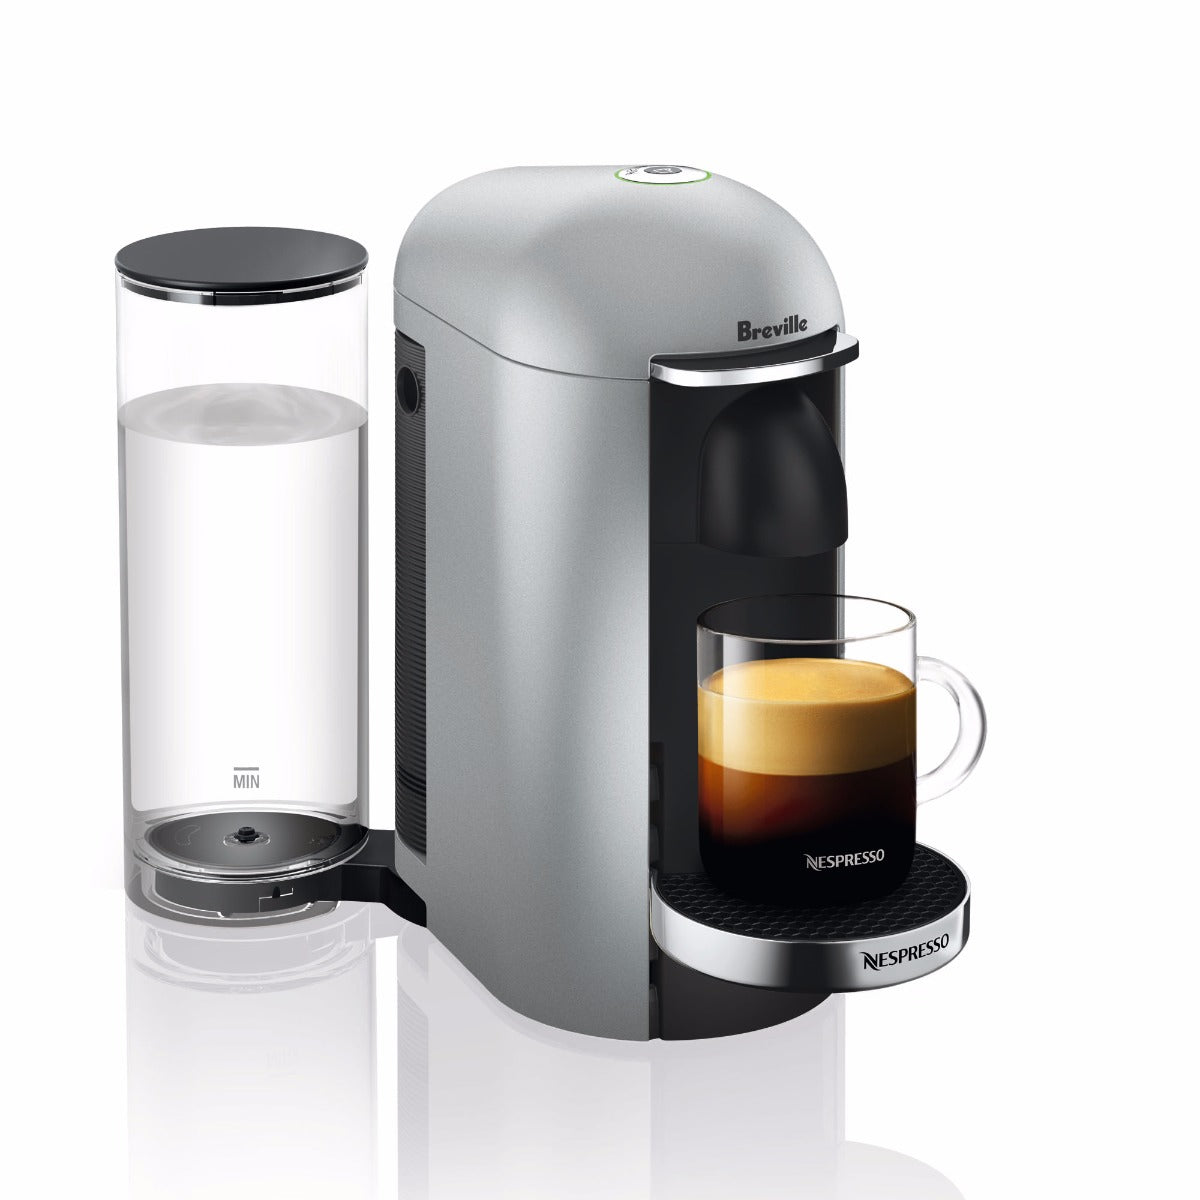 Nespresso VertuoPlus Deluxe Espresso Machine in Silver – Whole Latte Love